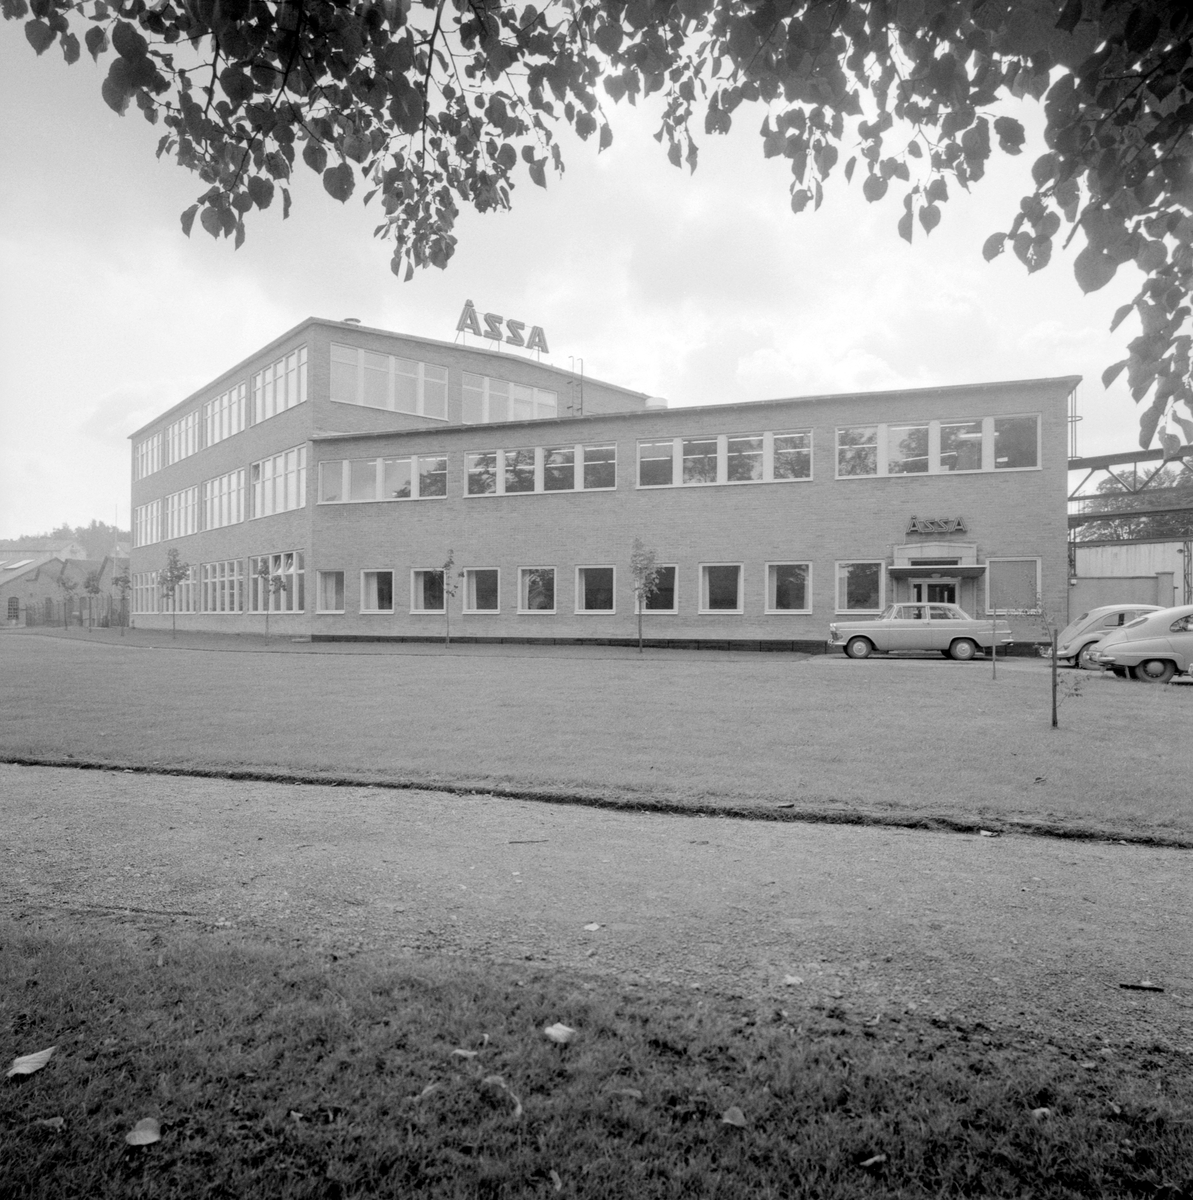 ÅSSA och senare omstruktueringar har sedan 1917 varit en viktig arbetsgivare för Åtvidaberg med omnejd. Företagsnamnet utläses AB Åtvidabergs Spårväxlar & Signalfabrik och tillverkningen har främst varit inriktad på signalmateriel för järnväg och flyg.